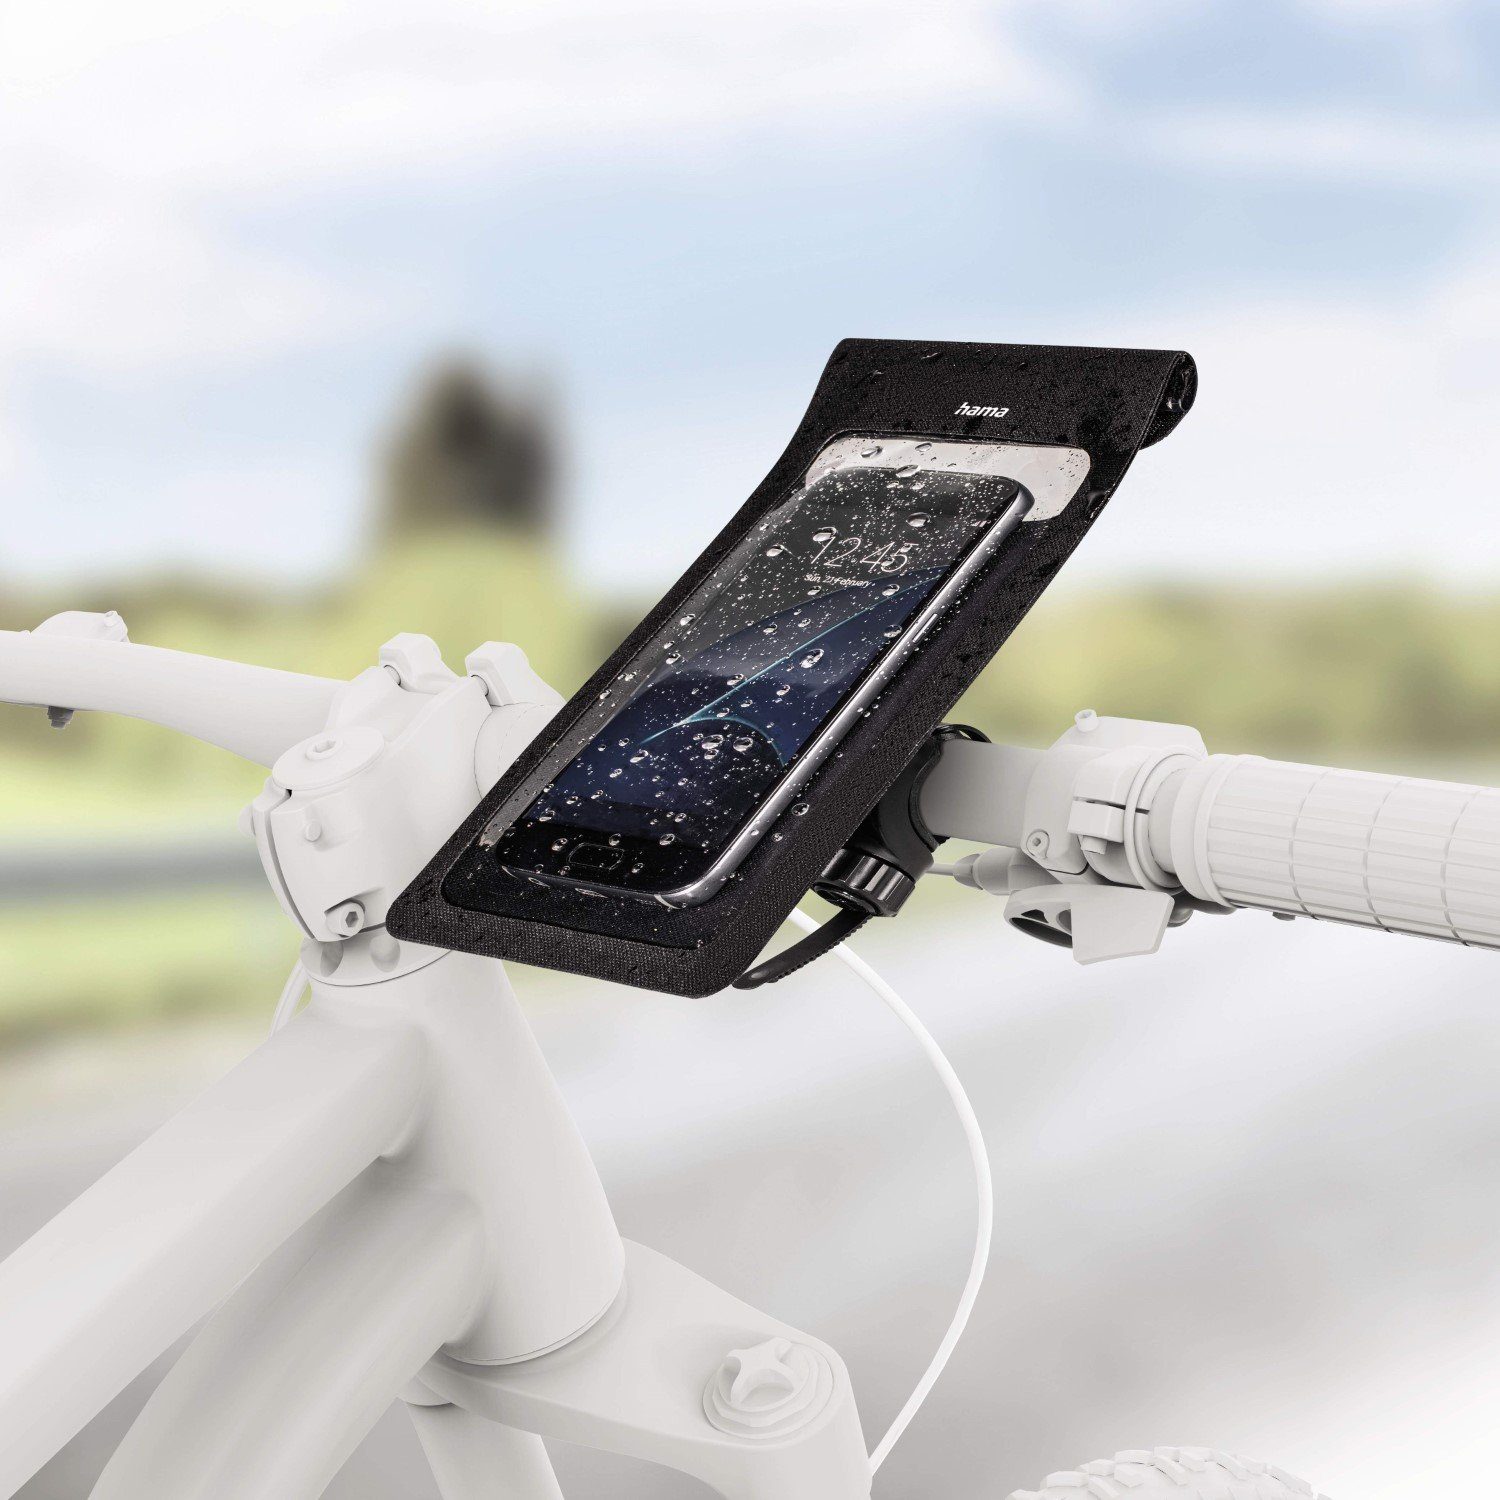 Hama Smartphone-Tasche Slim als Lenkertasche fürs Fahrrad wasserabweisend  Smartphone-Halterung, (wasserabweisend,in der Tasche bedienbar,dank  Kamerafenster fotografier), Strapazierfähiges, robustes, schmutz- und  wasserabweisendes Planenmaterial